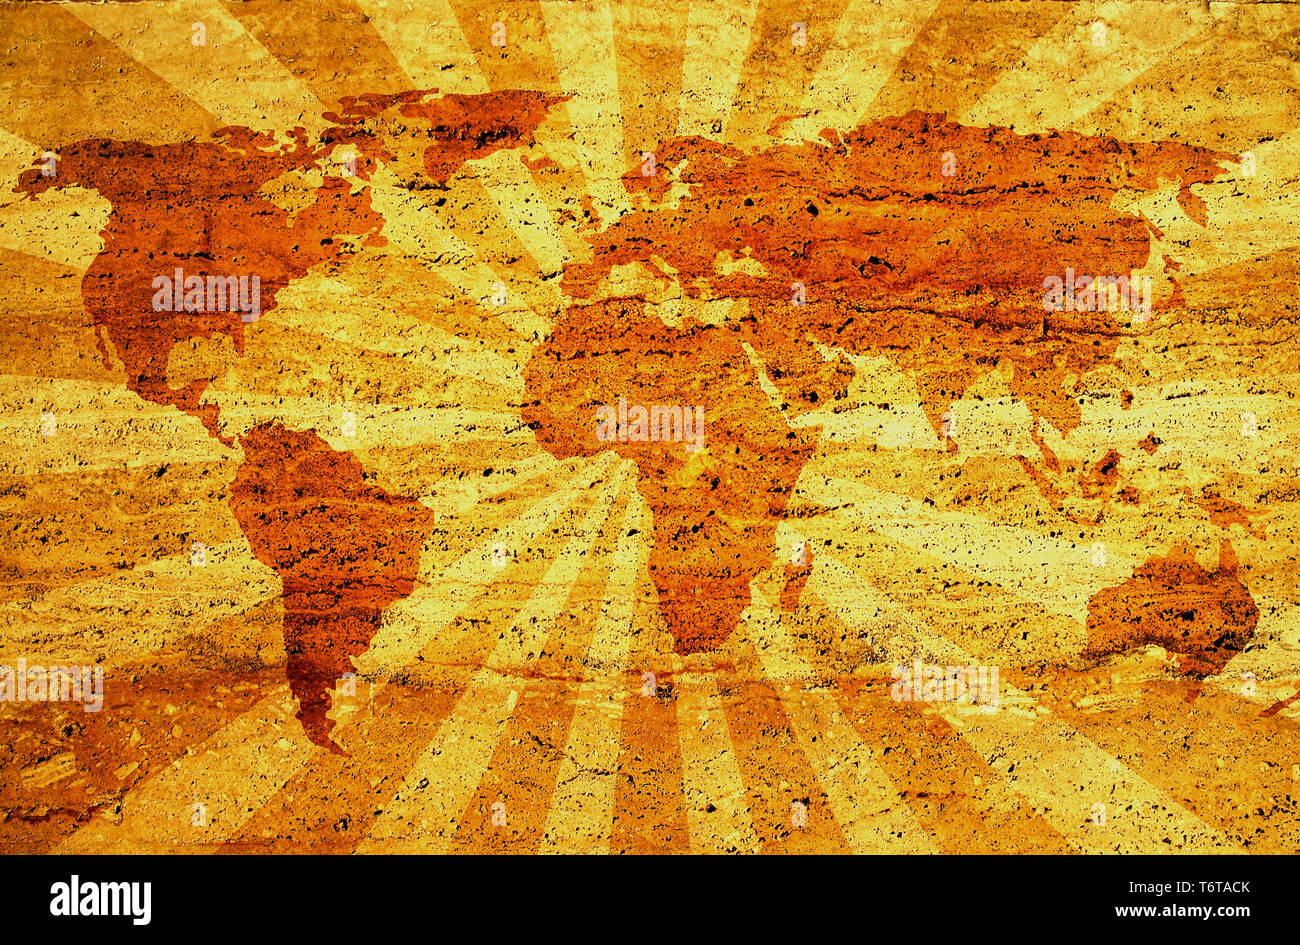 Carte du monde grunge sur sunbeam. arrière-plan tracé carte : http://www.lib.utexas.edu/maps/world maps/world pol02.jpg http://www.lib.utexas.ed Auteur : stat Banque D'Images